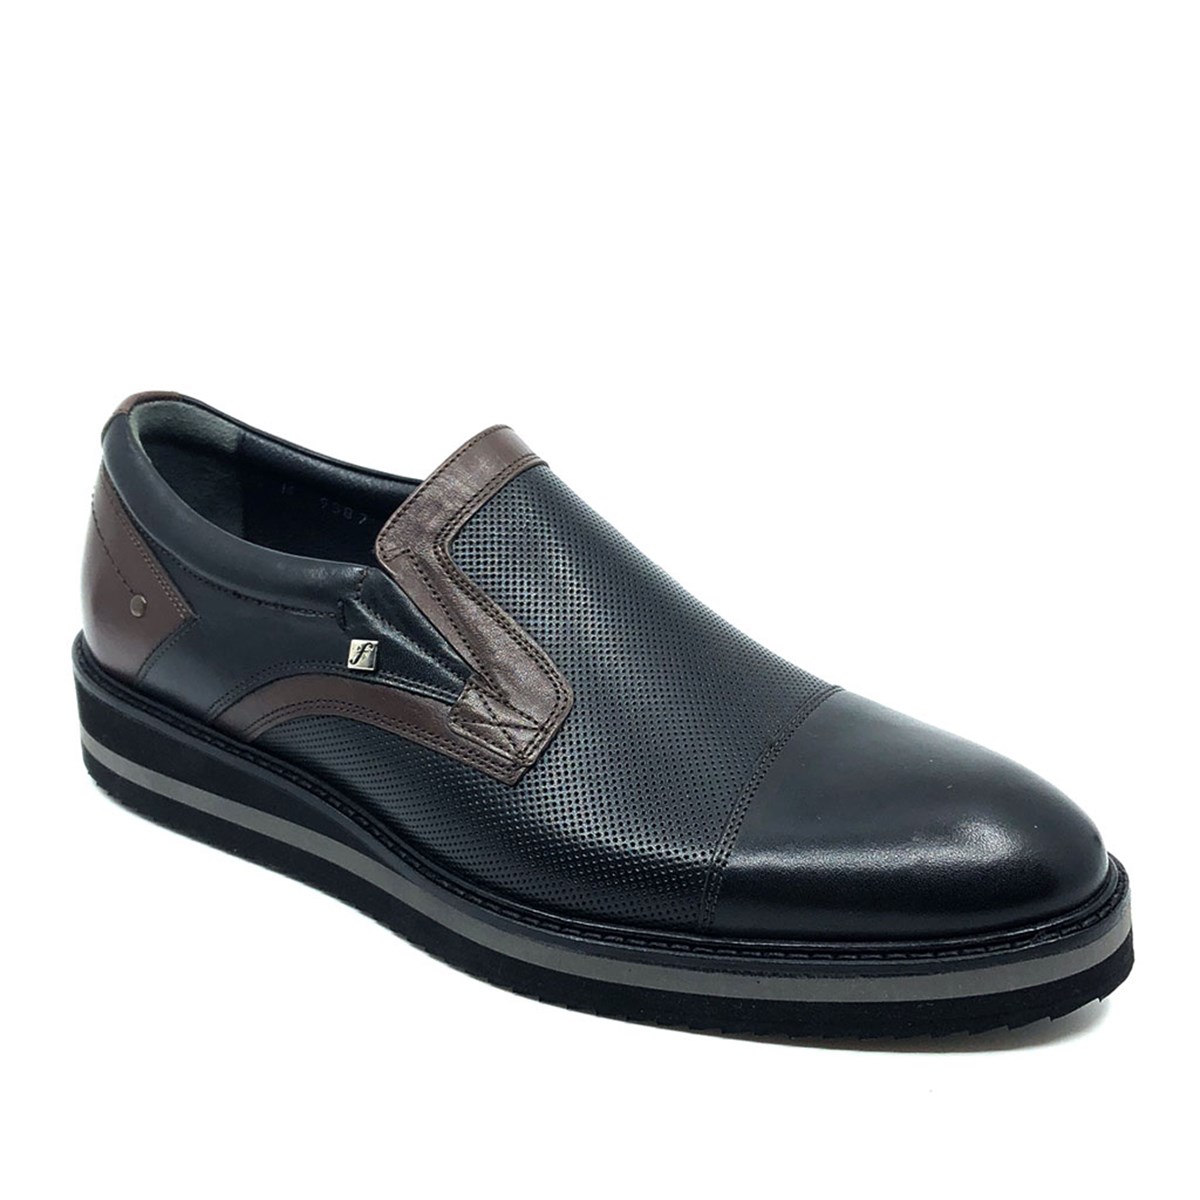 Erkek Günlük Bağcıksız Hakiki Deri Ayakkabı, Renk: Siyah, Beden: 39